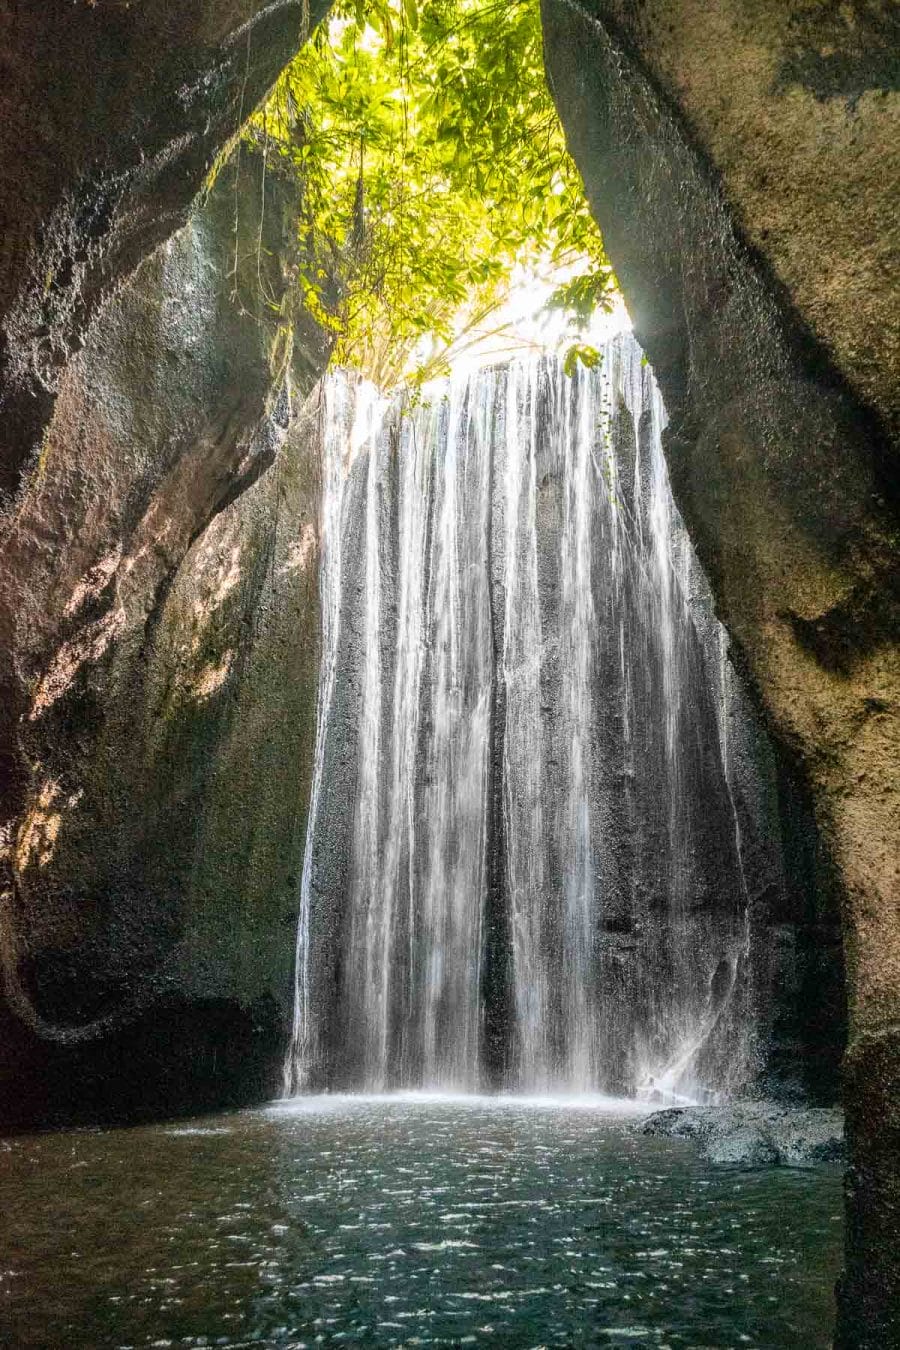 Tukad Cepung Waterfall in Bali